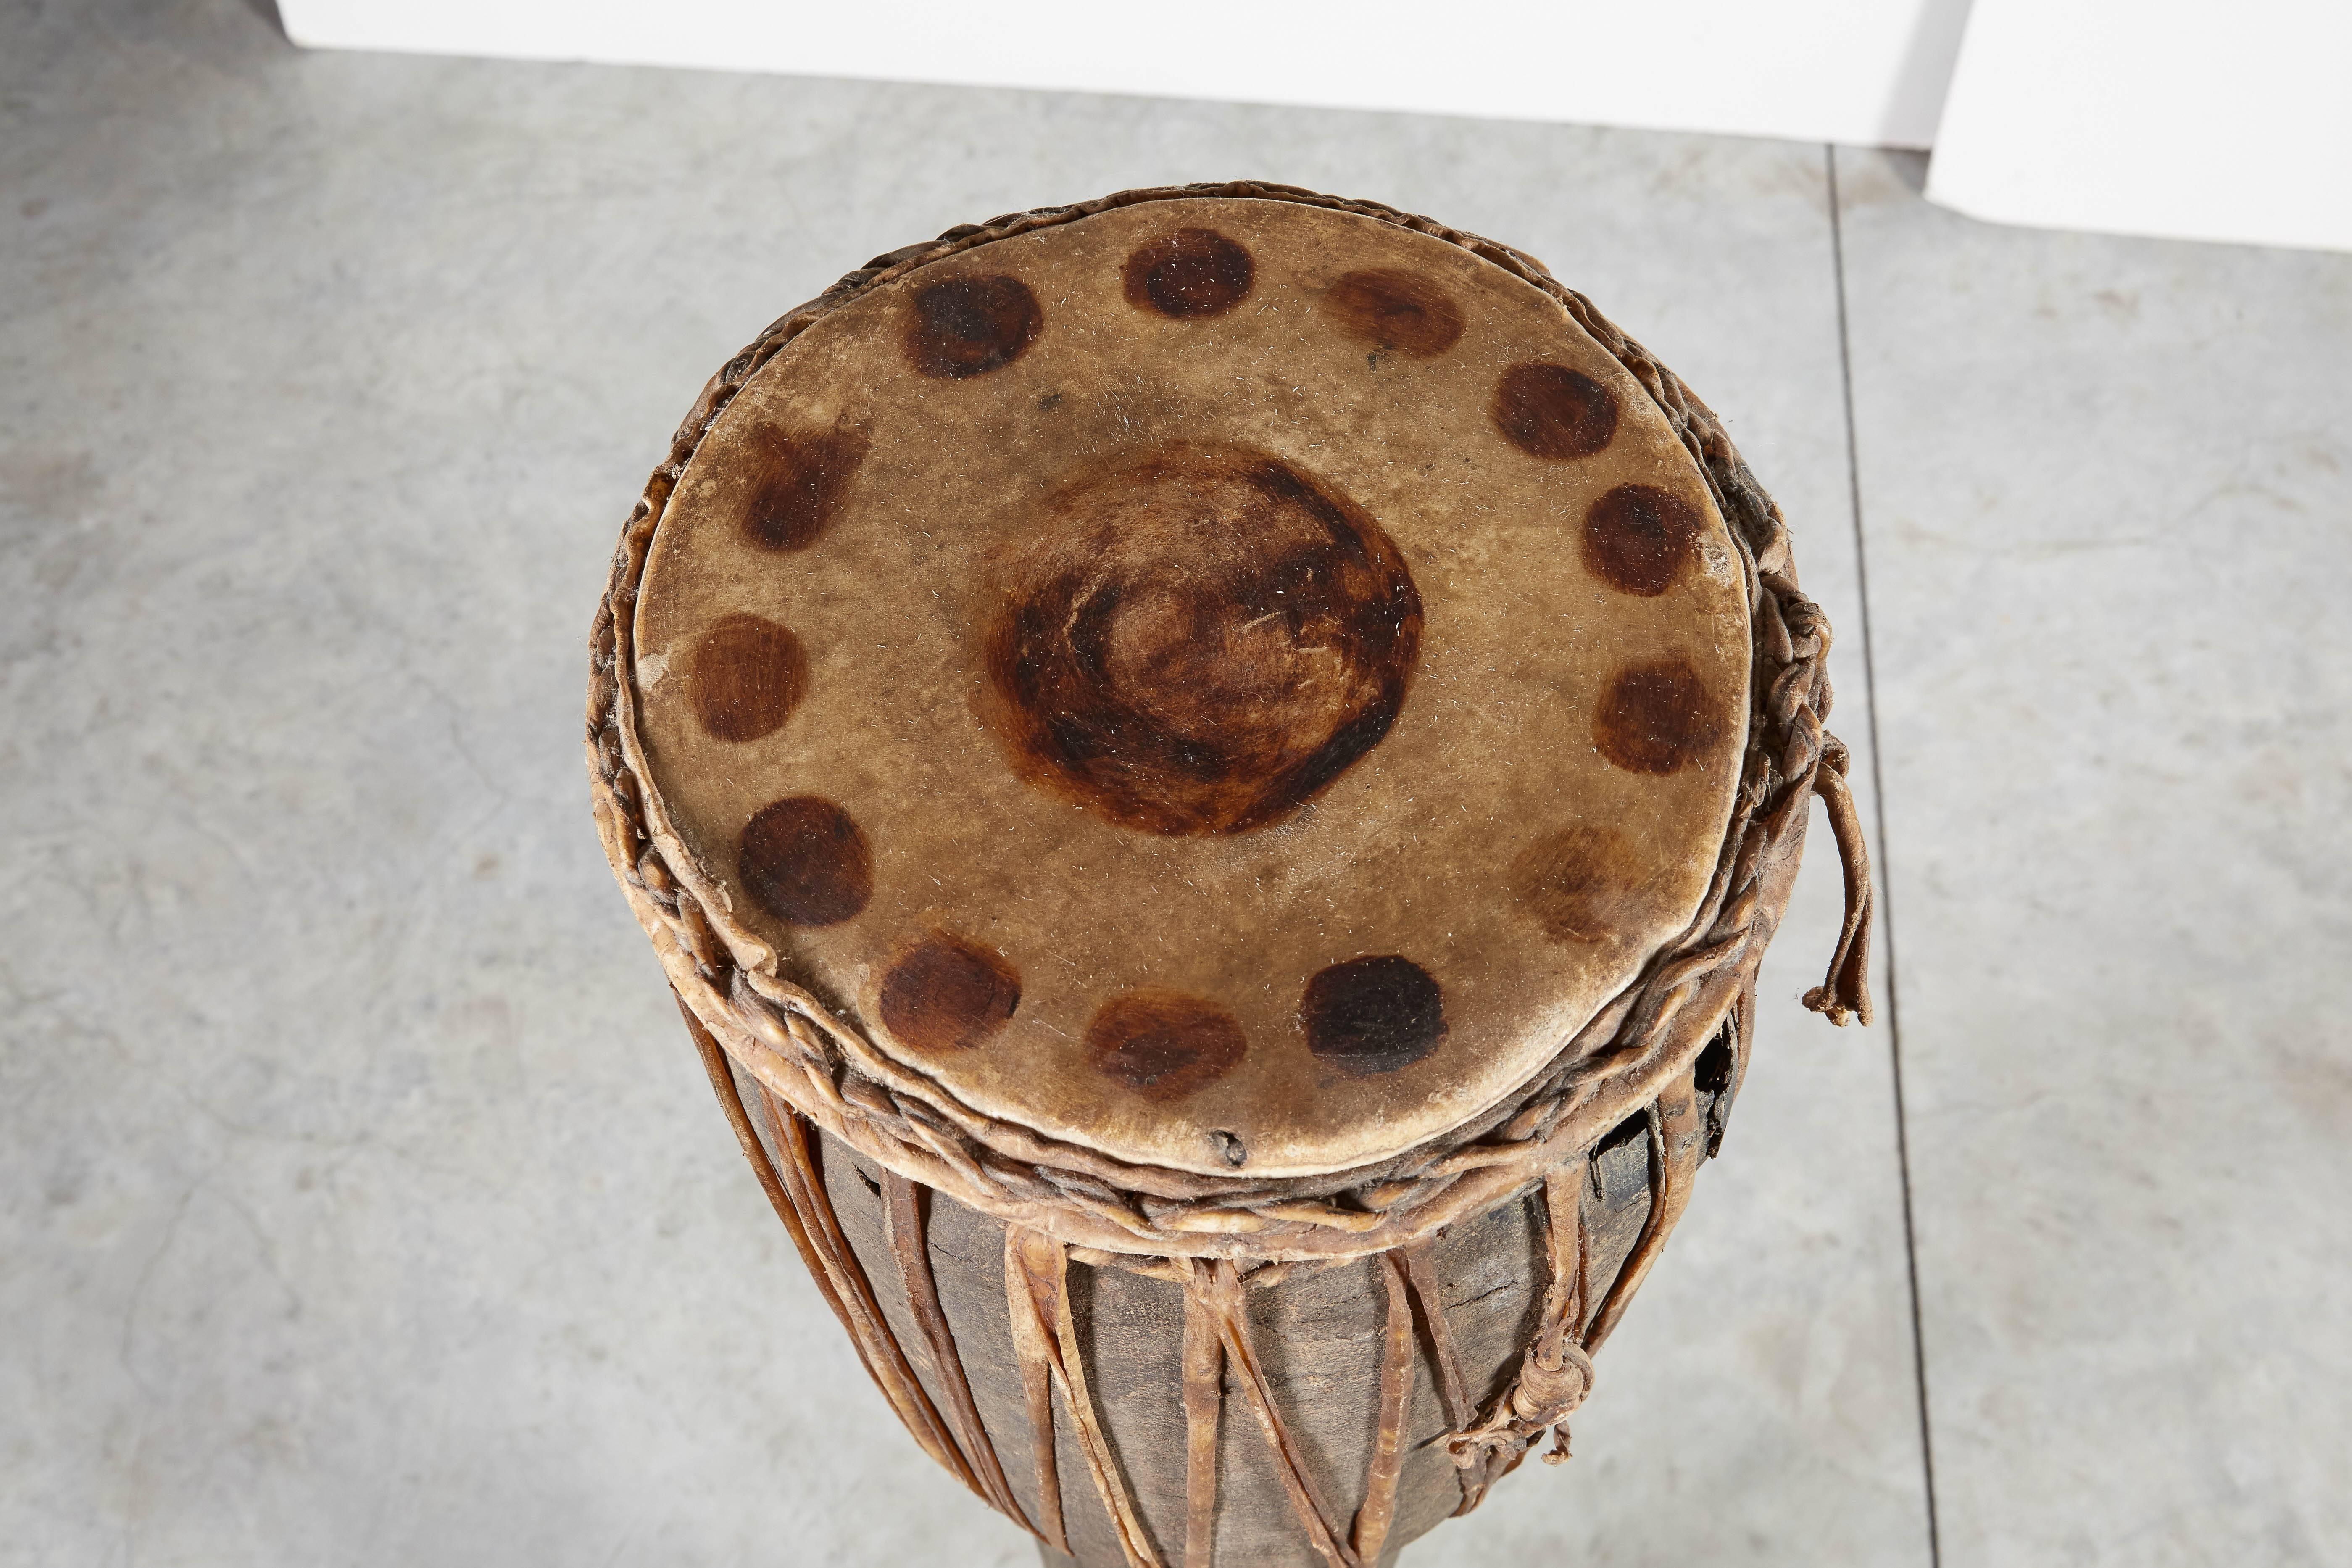 A  magnifique tambour de 48 pouces de haut provenant des tribus des collines à la frontière de la Thaïlande et de la Birmanie, avec des sangles en cuir et un dessus en cuir tacheté d'origine. Une pièce avec beaucoup de présence et